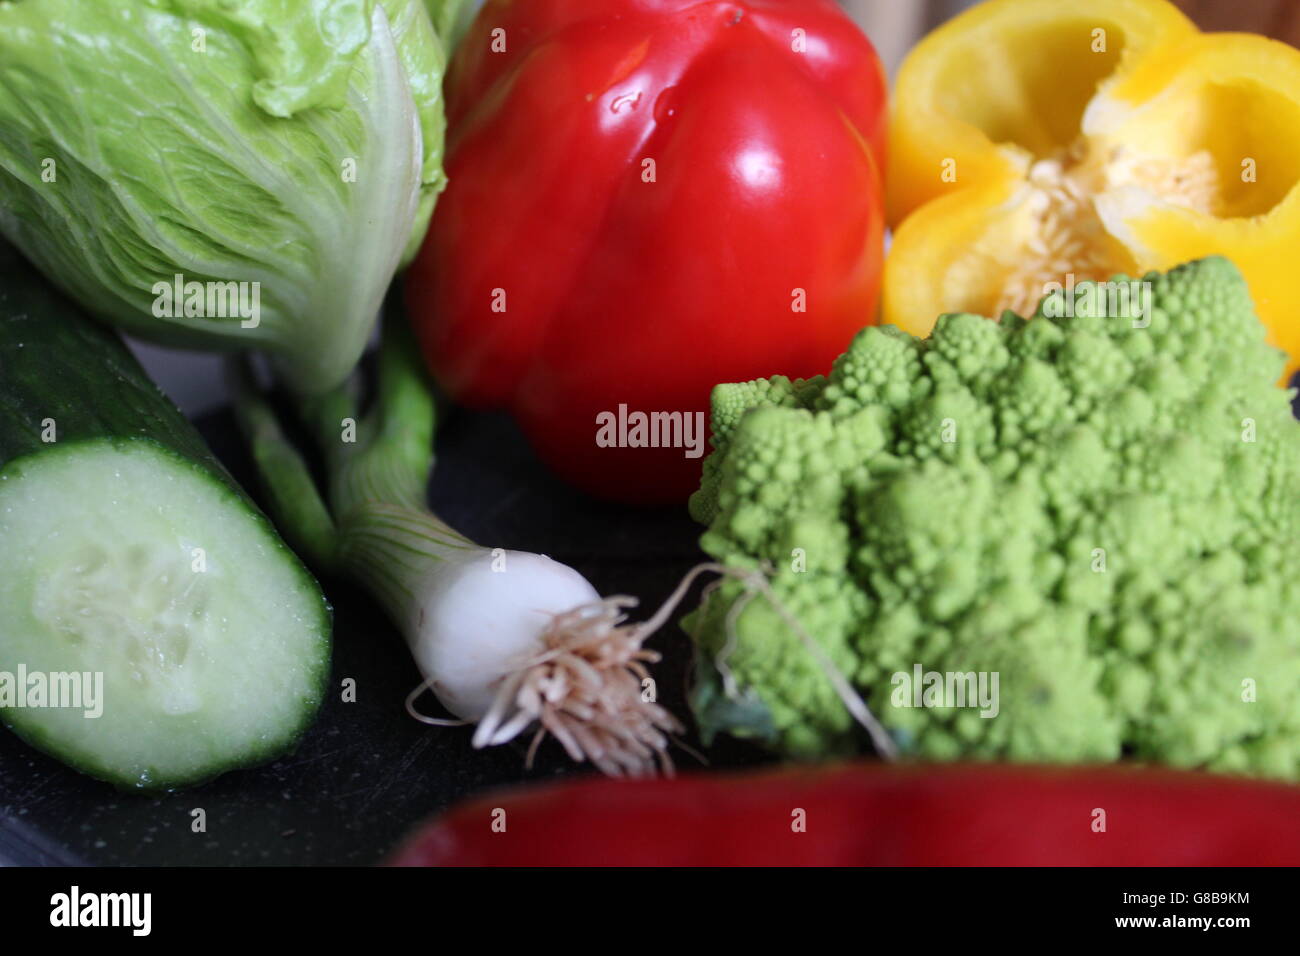 Vibrante, colorida, verdura fresca, incluida la romanesco pimientos, brócoli, cebolletas y lechuga. Foto de stock